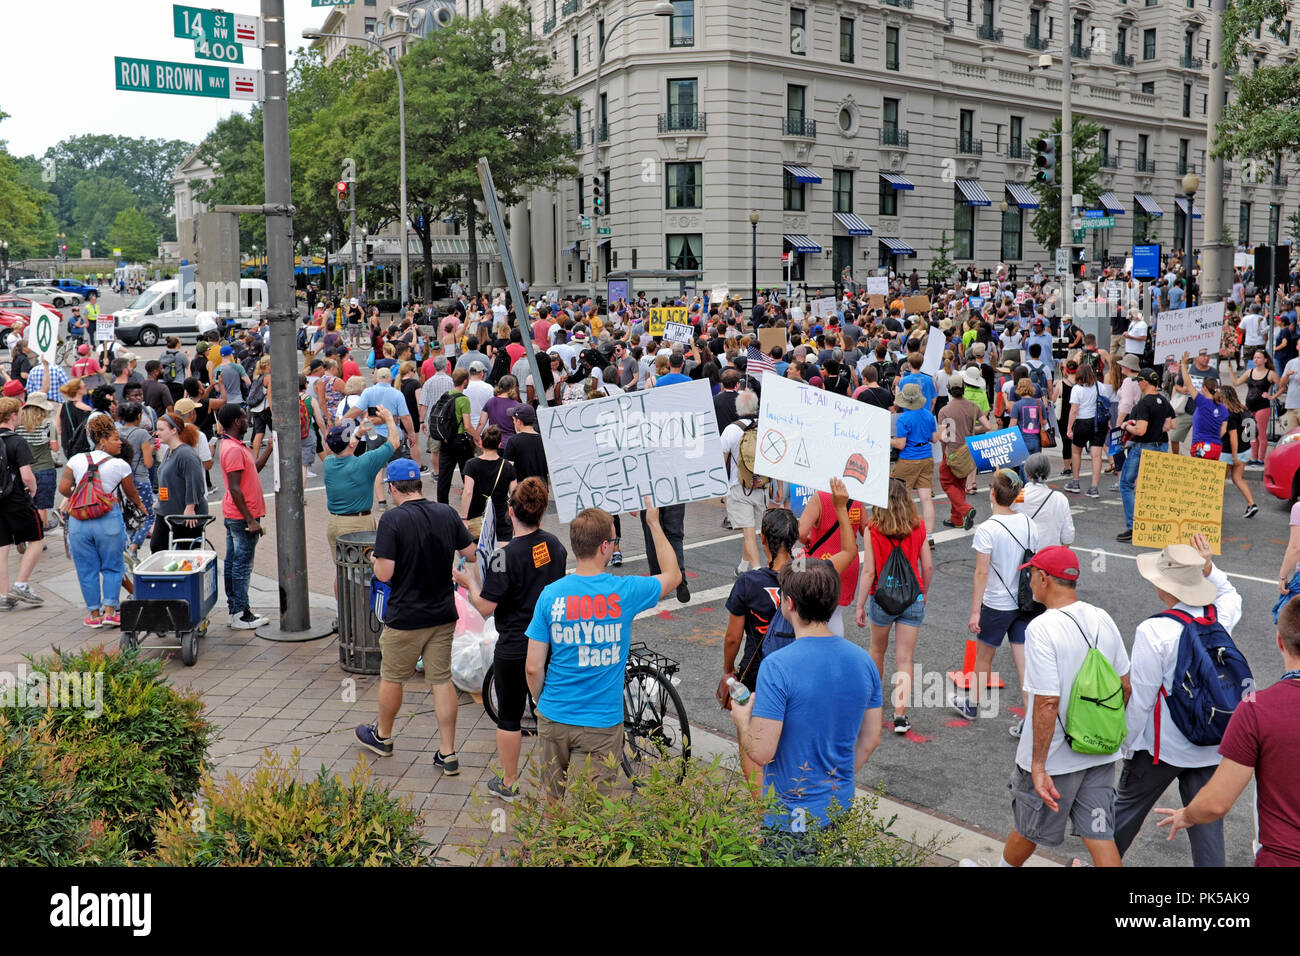 Los manifestantes rallyes contra el racismo y el odio hacen su camino hasta la 14th Street en Washington DC en su camino a Lafayette Park para protestar por el alt-derecha. Foto de stock